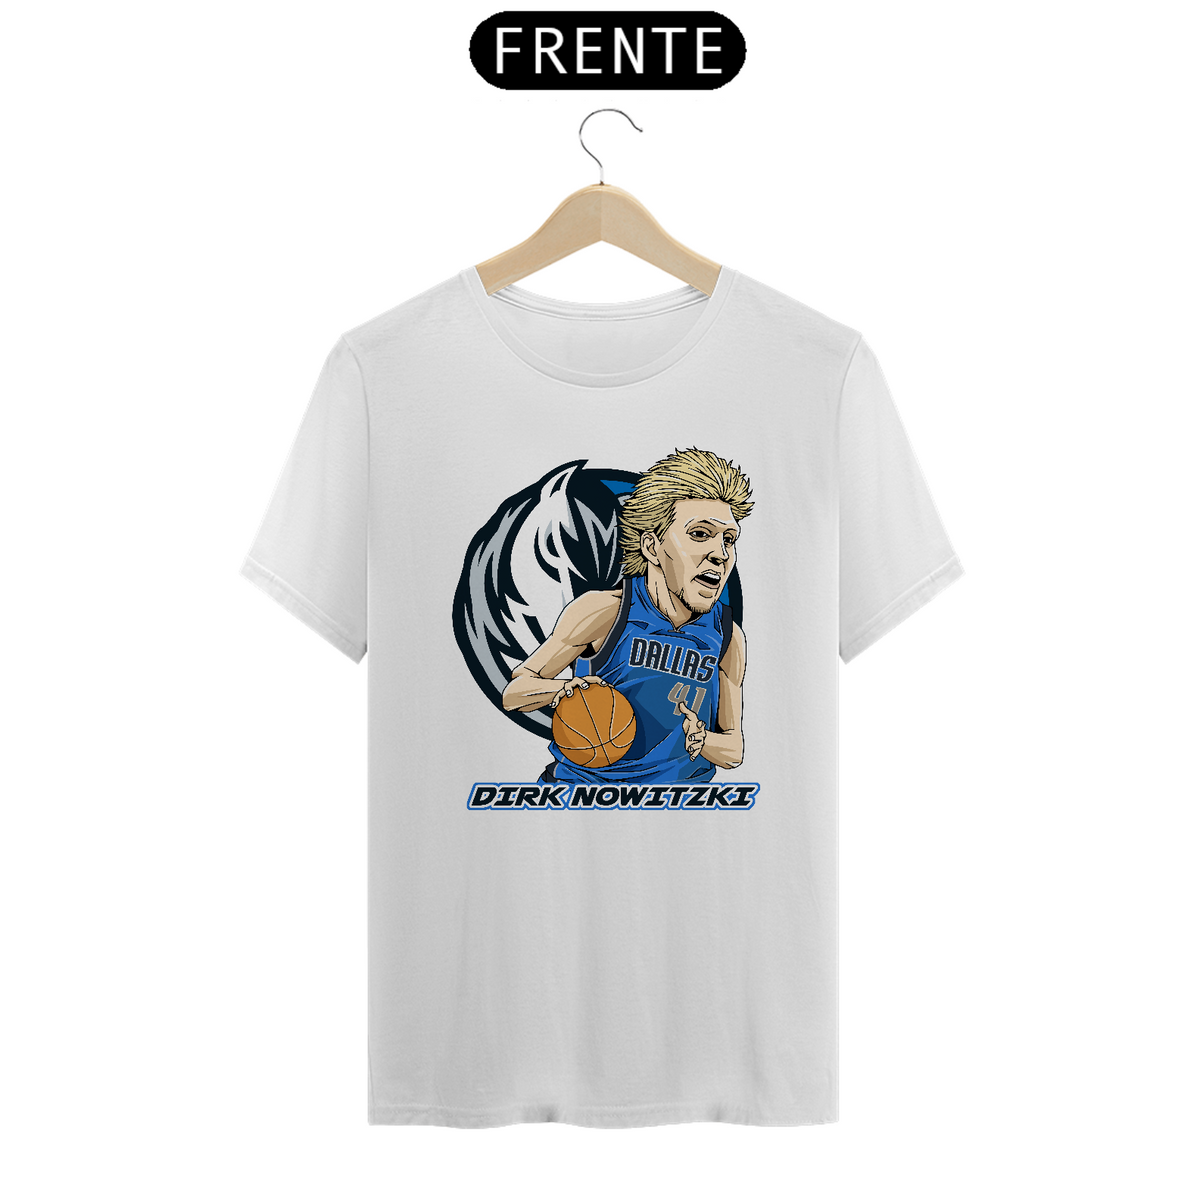 Nome do produto: Camiseta Dirk Nowitzki